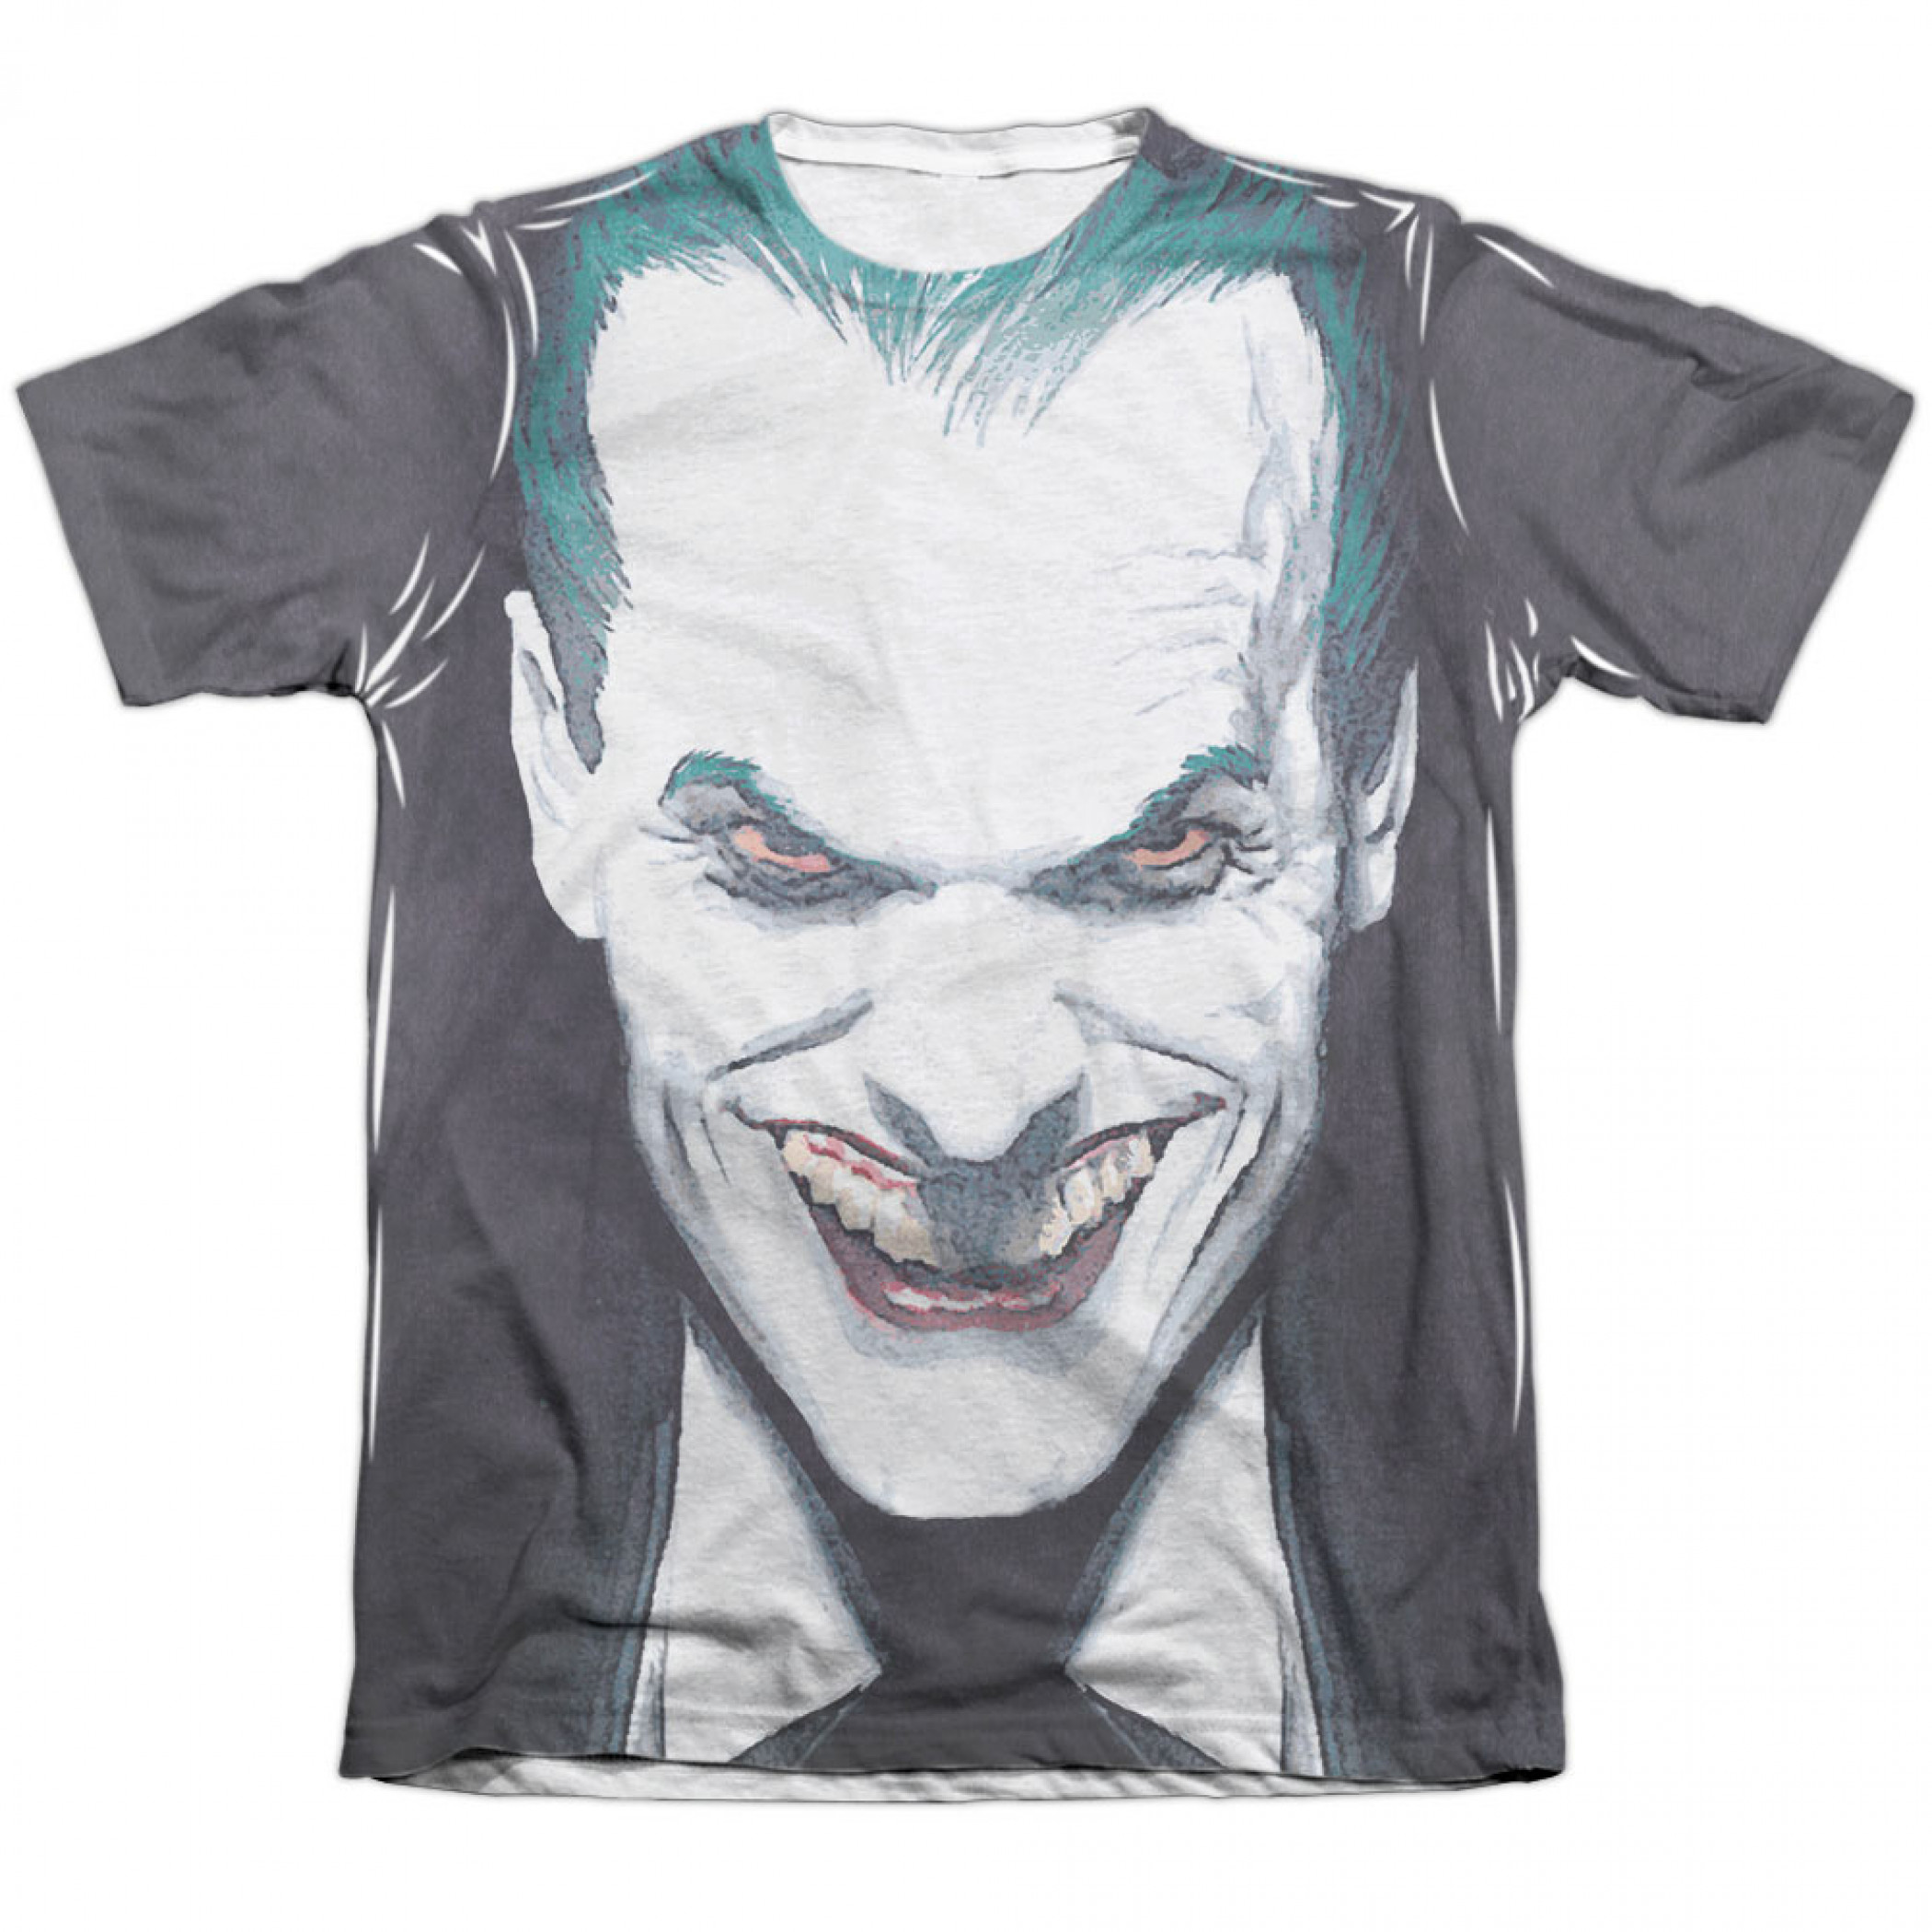 Batman Joker Last Dance Sublimation T-Shirt